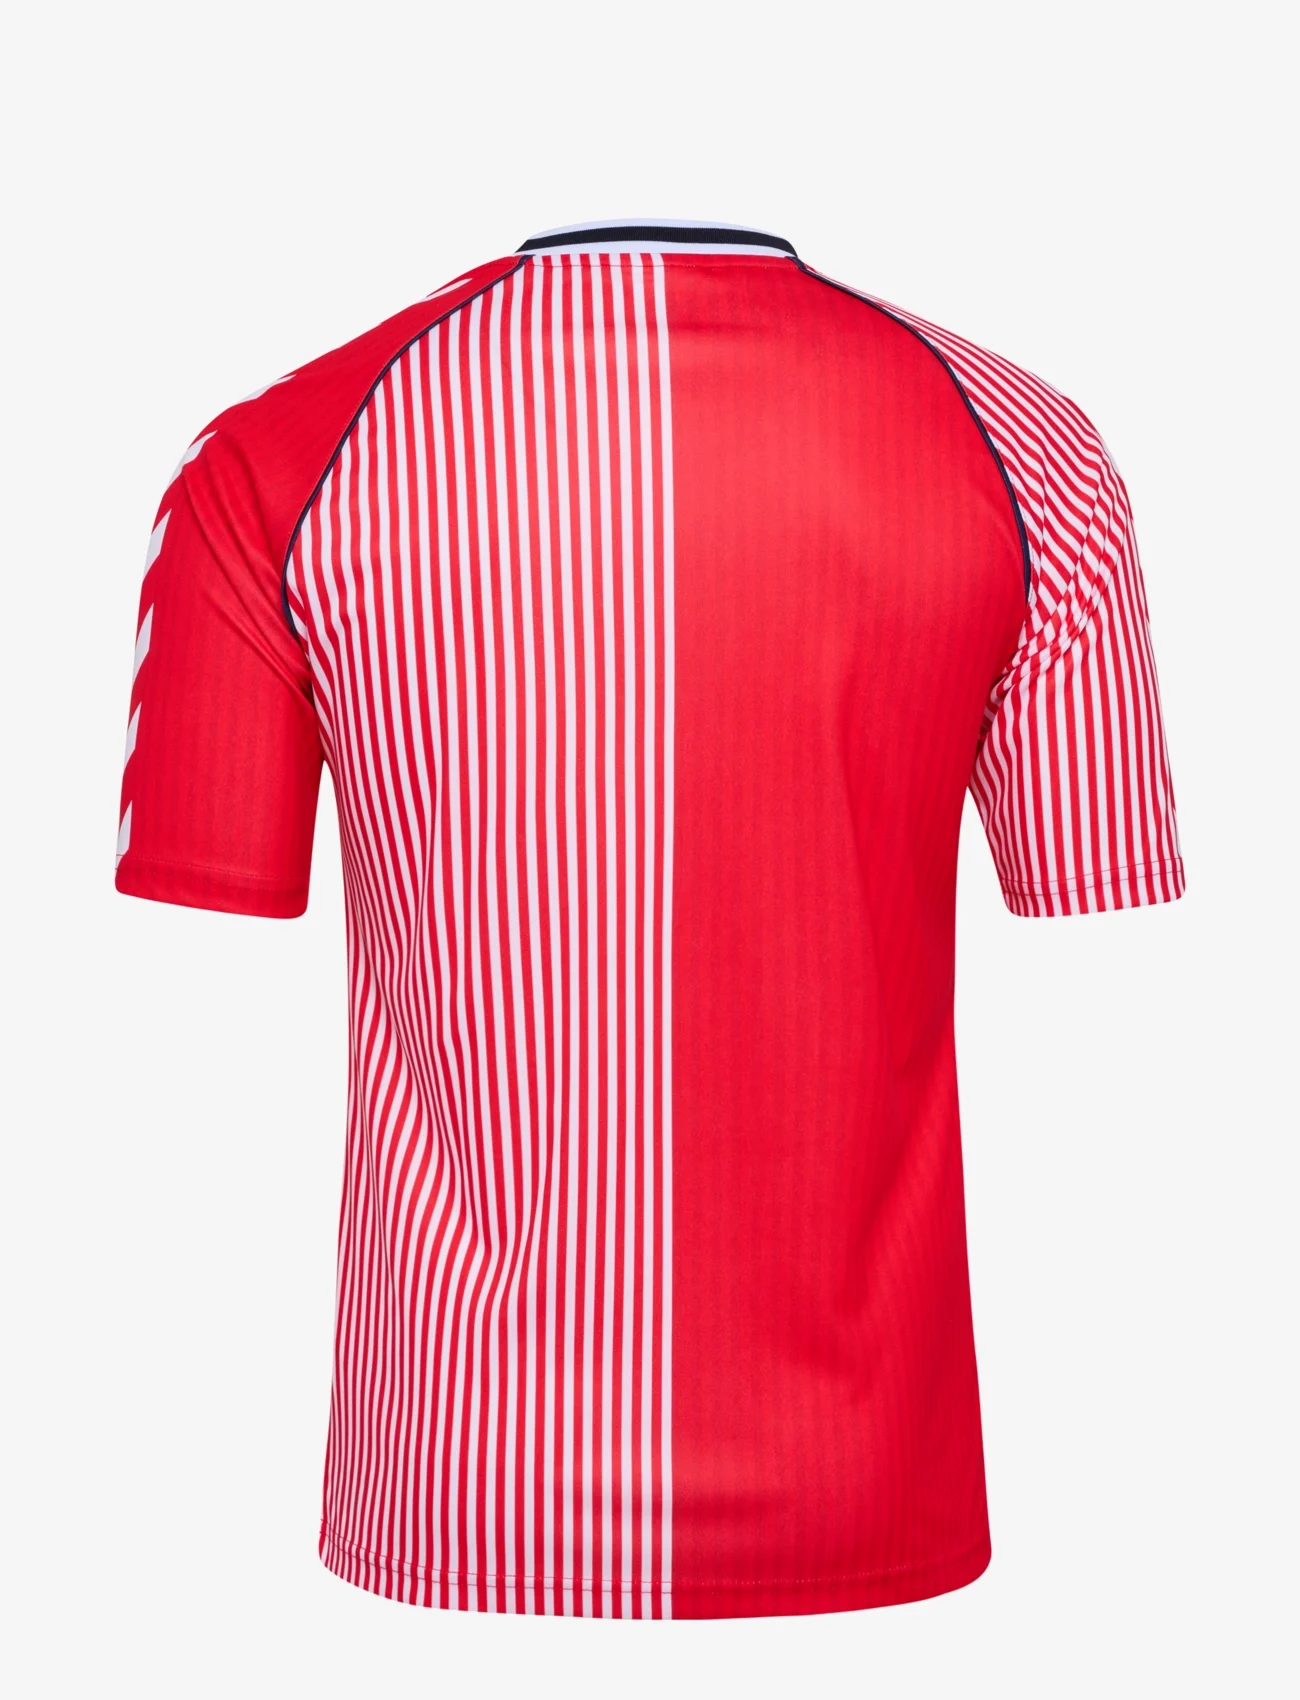 Hummel - DBU 86 REPLICA JERSEY S/S KIDS - koszulki piłkarskie - red/white - 1